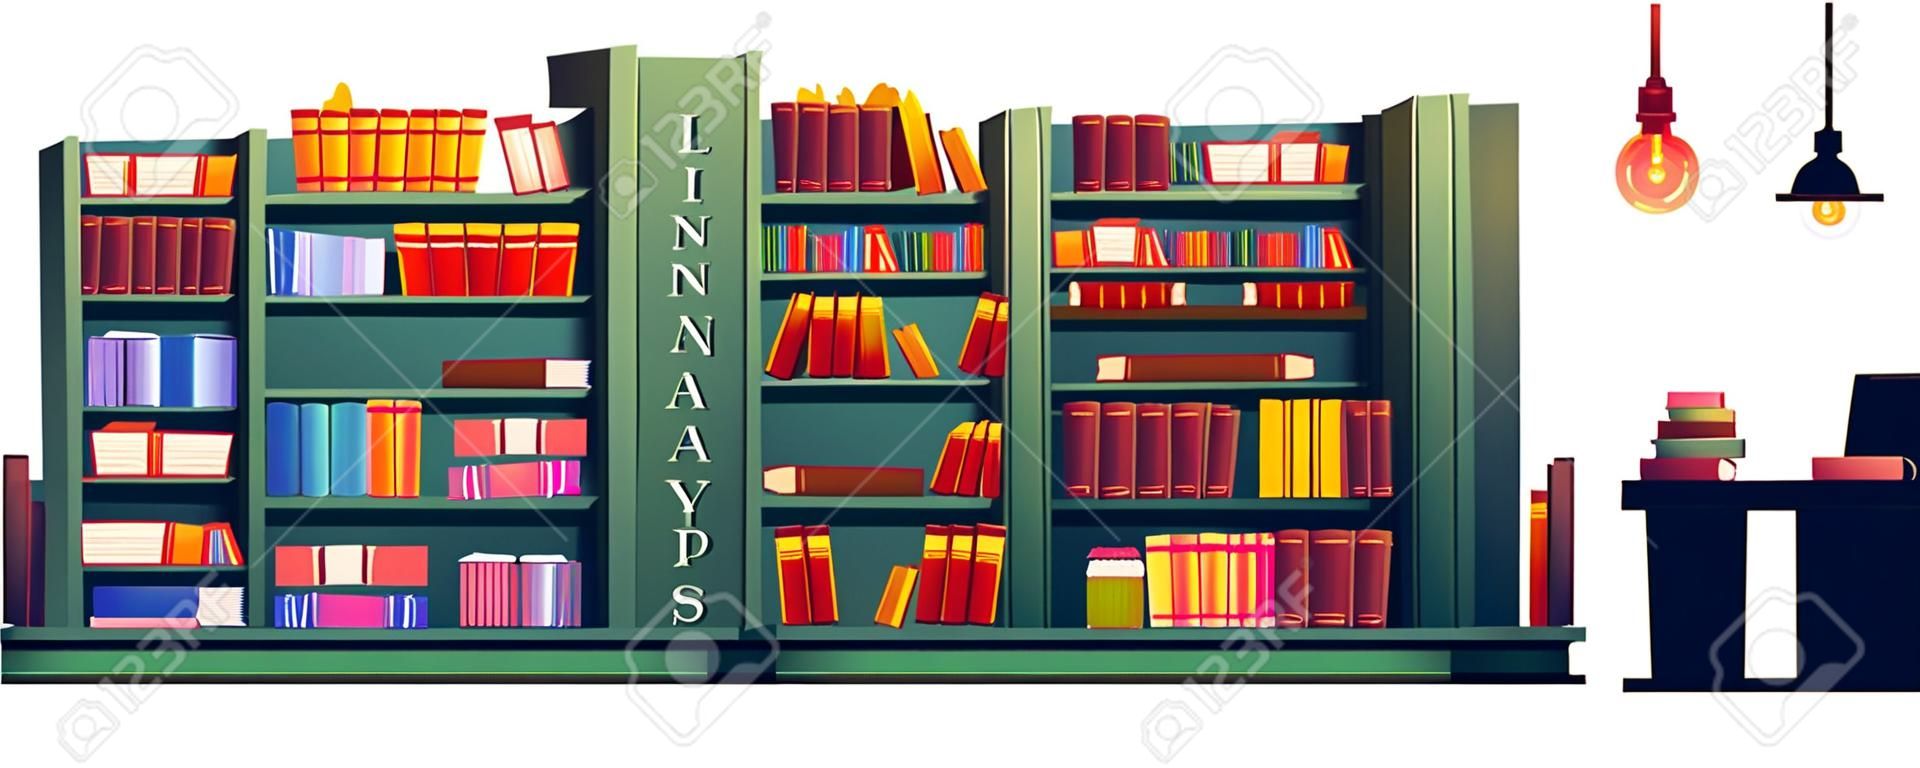 책꽂이에 책이 있고 테이블에 노트북이 있는 도서관. 학교, 대학 또는 공공 도서관 또는 책장, 연구용 책상 및 흰색 배경에 격리된 램프가 있는 상점의 벡터 만화 그림